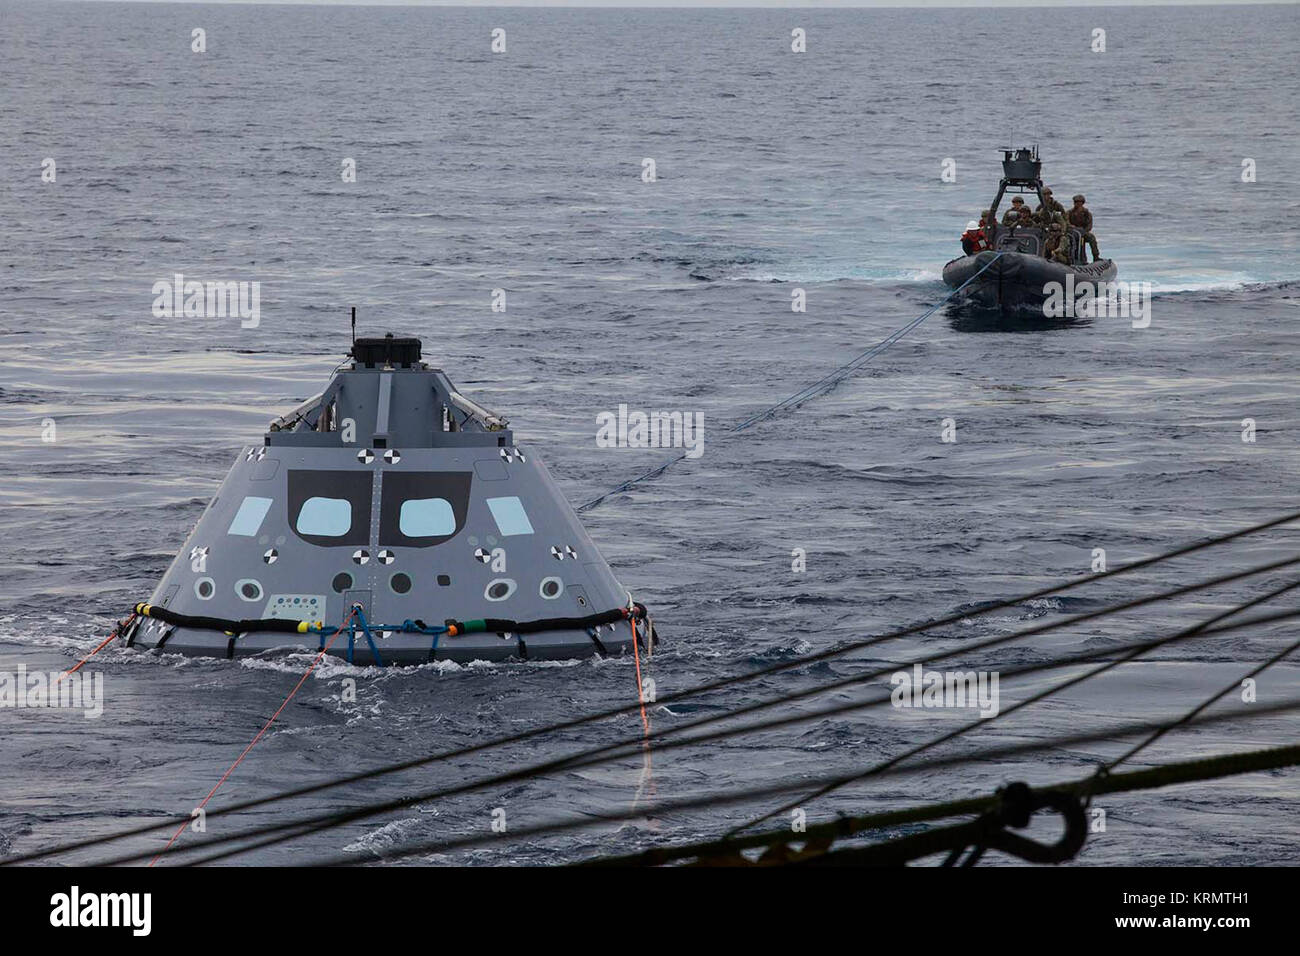 Los buzos de la Marina de EE.UU. y otros miembros del personal en un casco rígido Zodiac adjunta líneas de atado para una versión de prueba de la tripulación Orion durante la prueba de recuperación en marcha el módulo 5 en el océano Pacífico frente a la costa de California. Tierra de la NASA y de desarrollo de sistemas y programas de operaciones de la Marina de los EE.UU. están llevando a cabo una serie de pruebas con el USS San Diego, varias embarcaciones y equipos para practicar para la recuperación de Orión en su regreso de misiones en el espacio interestelar. Las pruebas permitirá al equipo para demostrar y evaluar los procesos de recuperación, procedimientos, hardware y personal en aguas abiertas. Orion es el Foto de stock